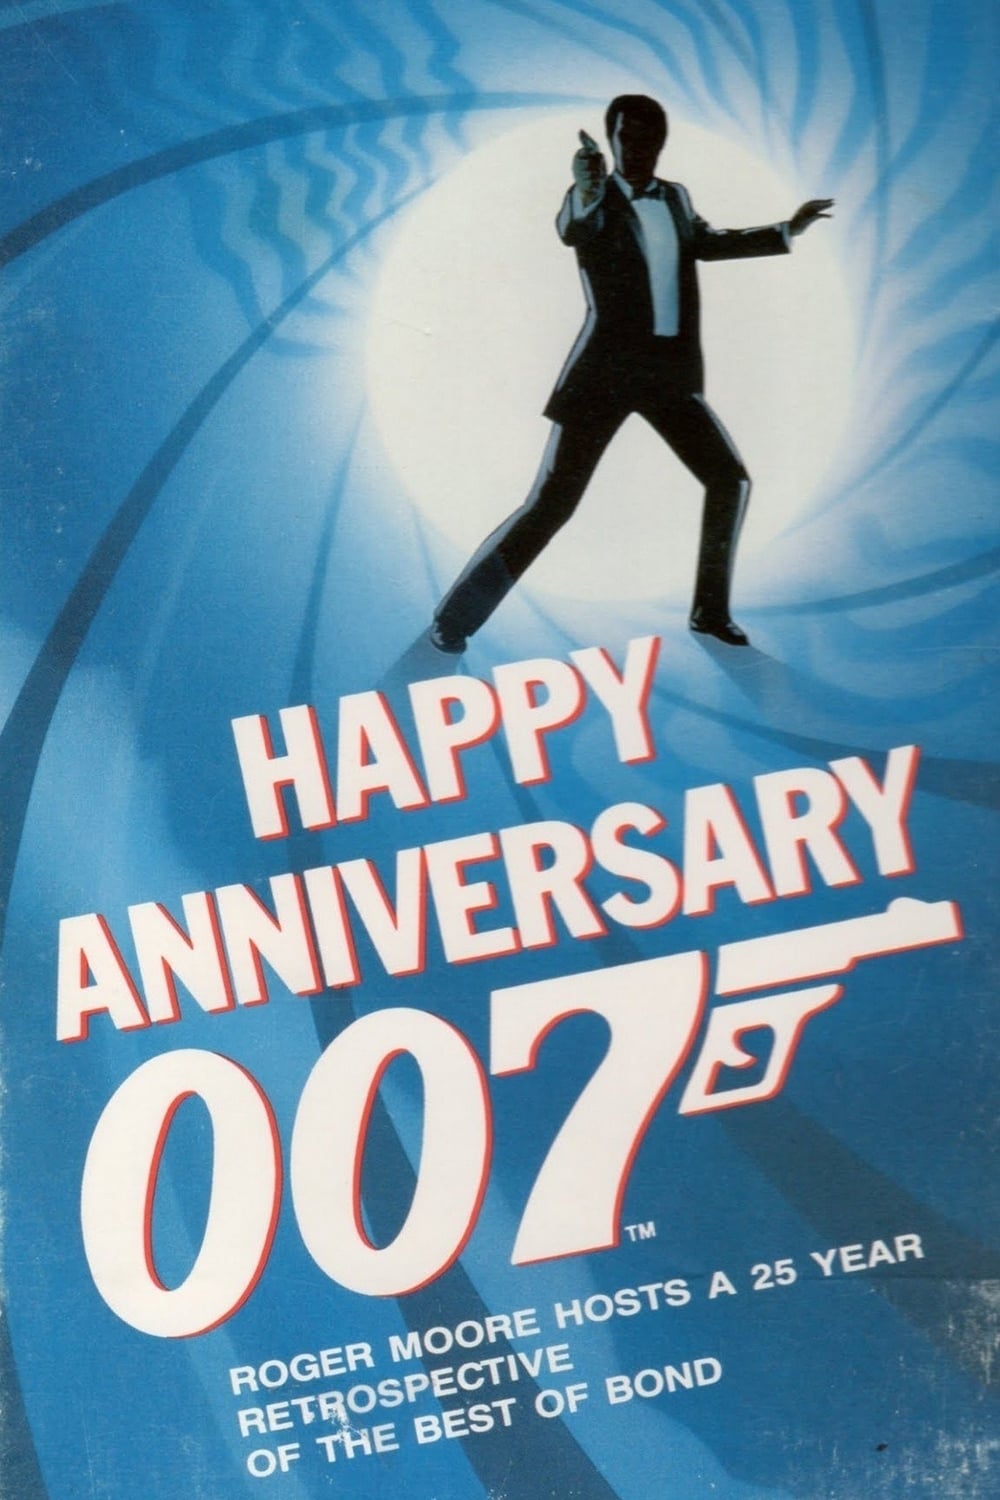 Happy Anniversary 007: 25 Years of James Bond (1987)